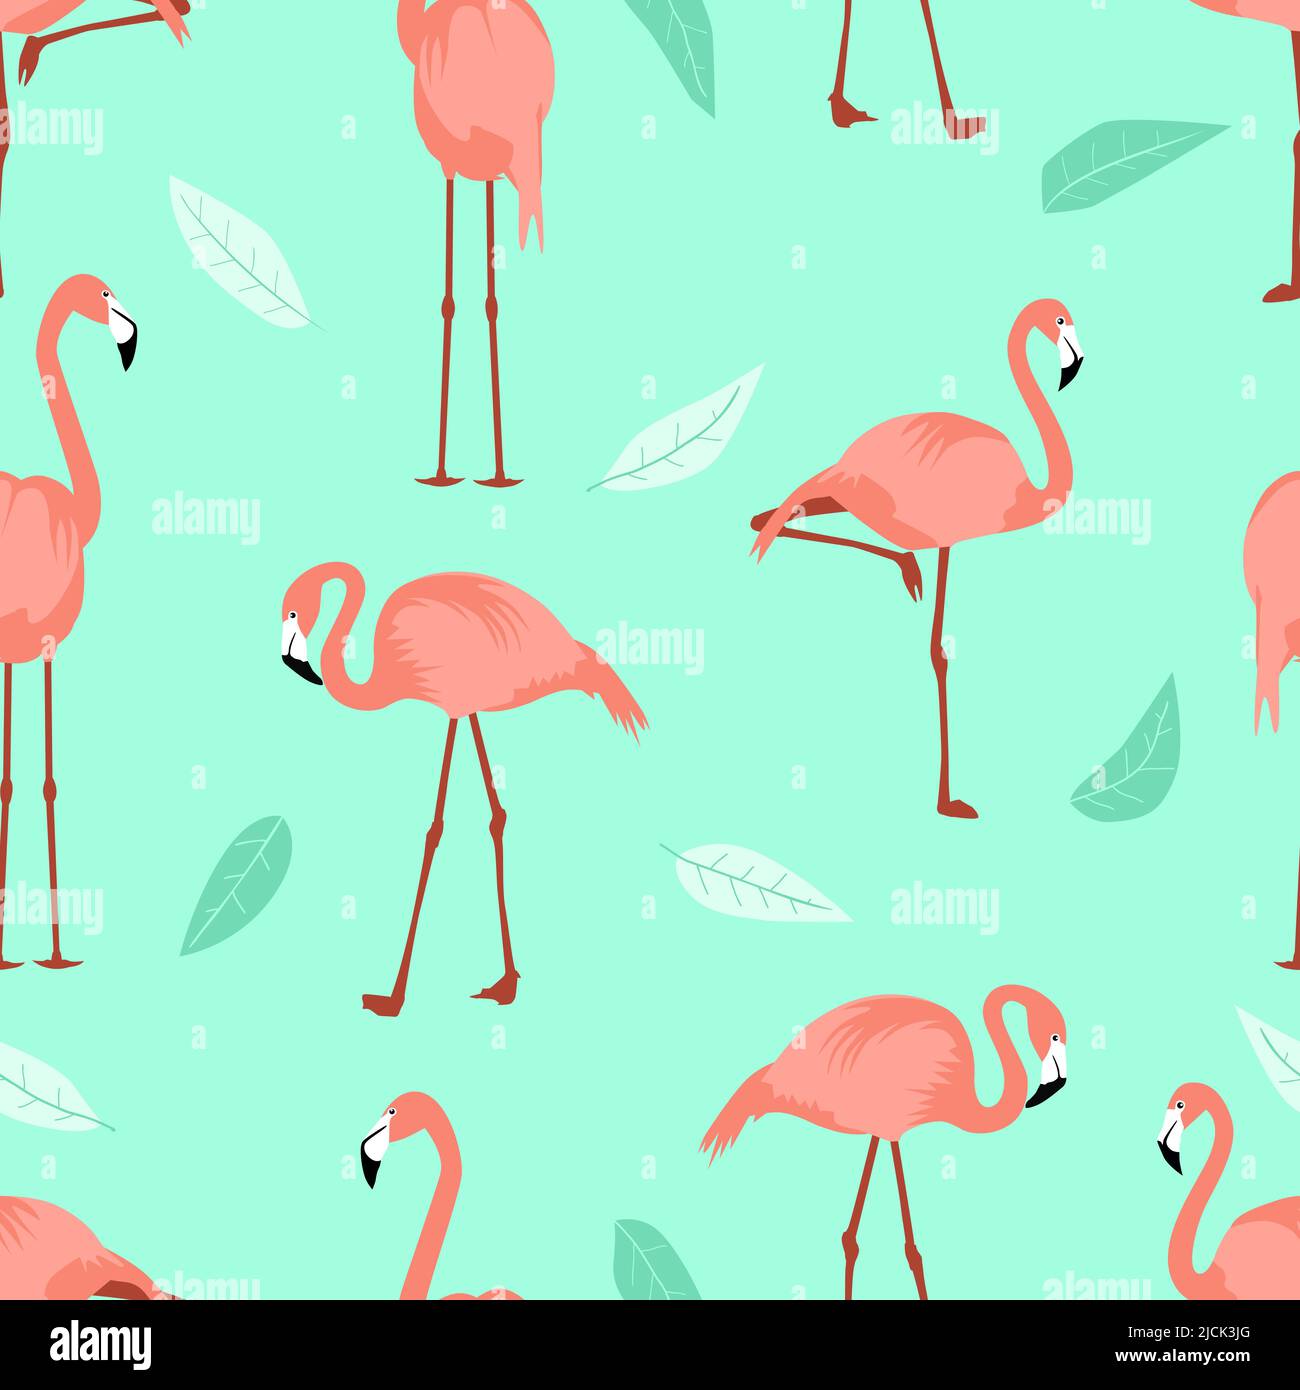 Nahtlose Sommer Muster Flamingo türkis Laub Hintergrund. Exotische Watvögel verschiedene Posen. Seitenansicht Flamingos für Abdeckung Kinder Kulissen Krankenschwester Stock Vektor